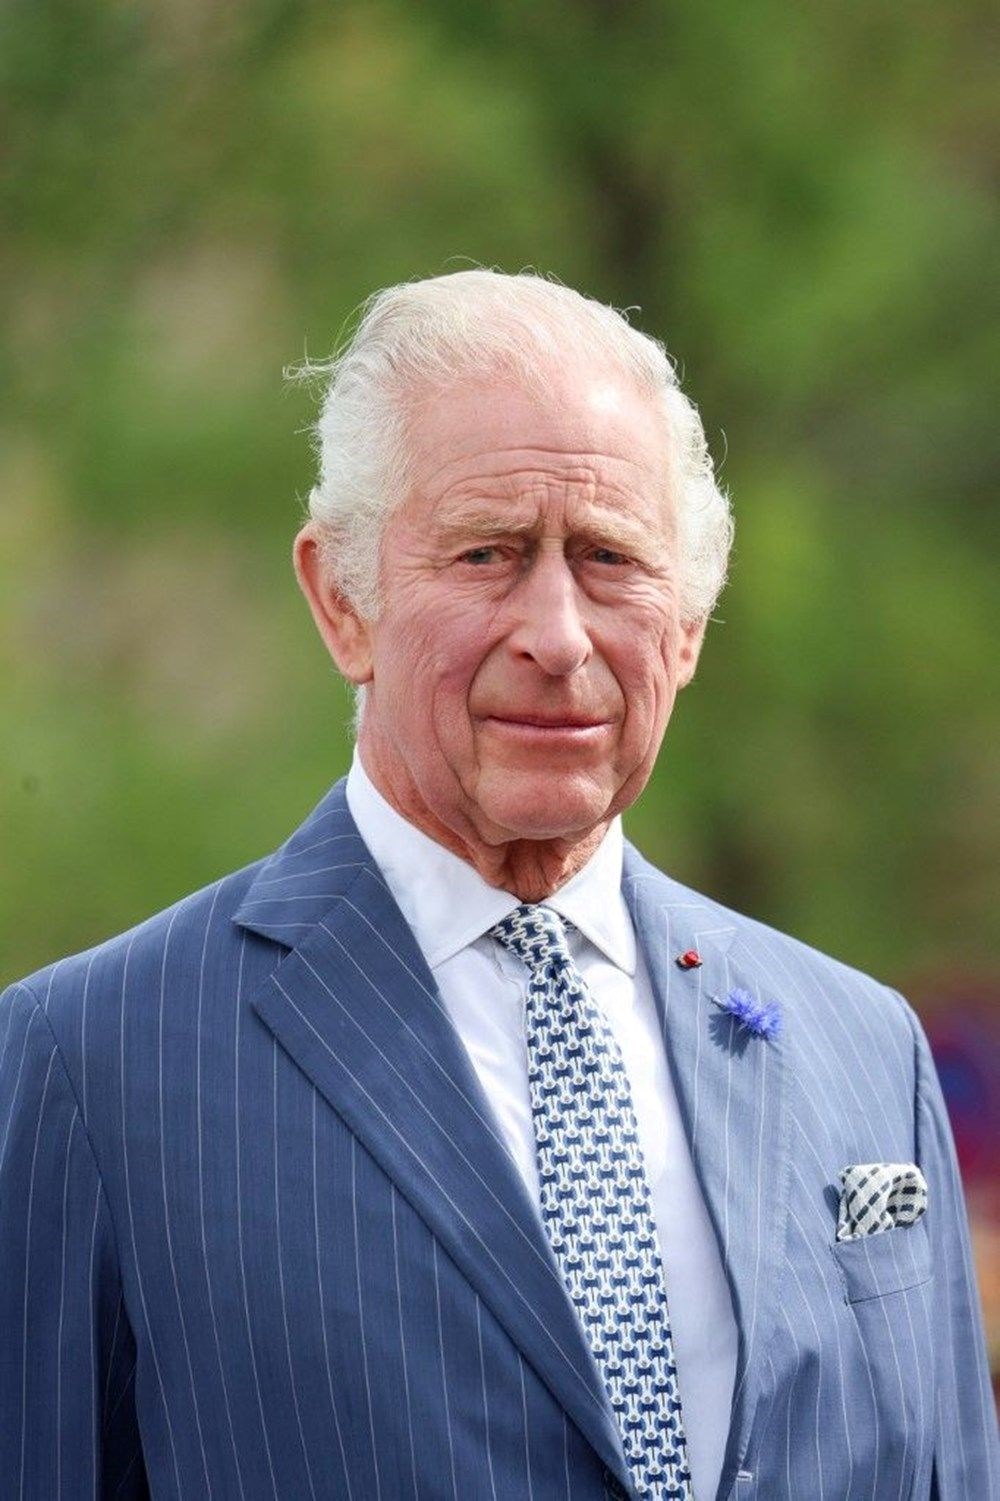 Babası Kral Charles'a kanser teşhisi kondu: Prens Harry apar topar İngiltere'ye gidiyor - 4